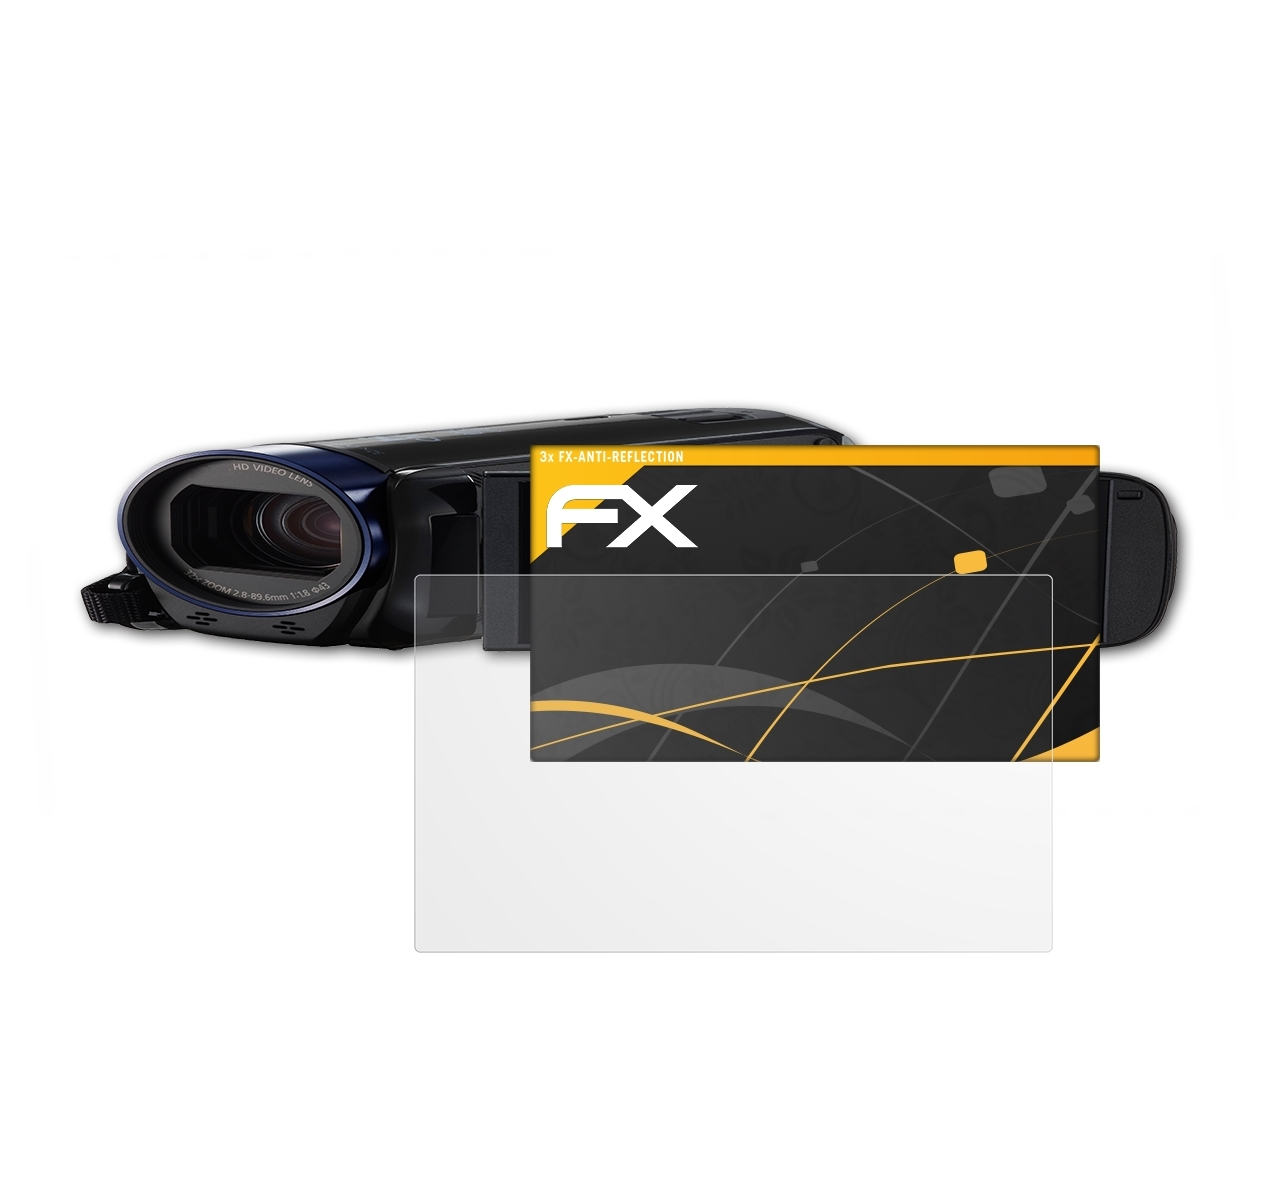 R606) HF Canon Displayschutz(für 3x FX-Antireflex Legria ATFOLIX